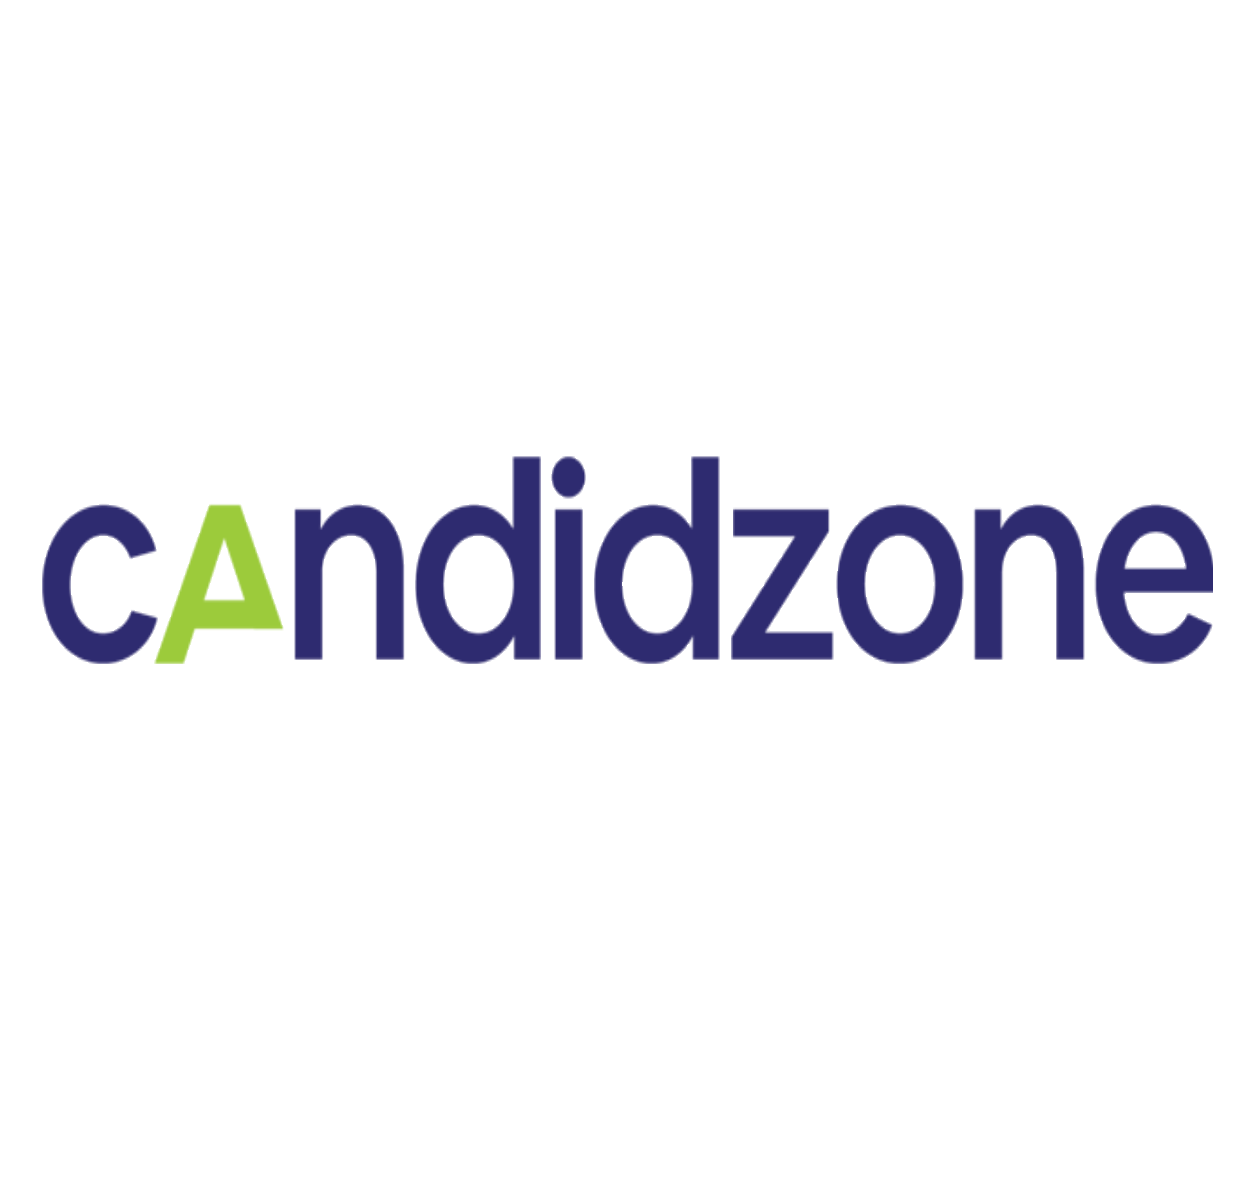 Candidzone